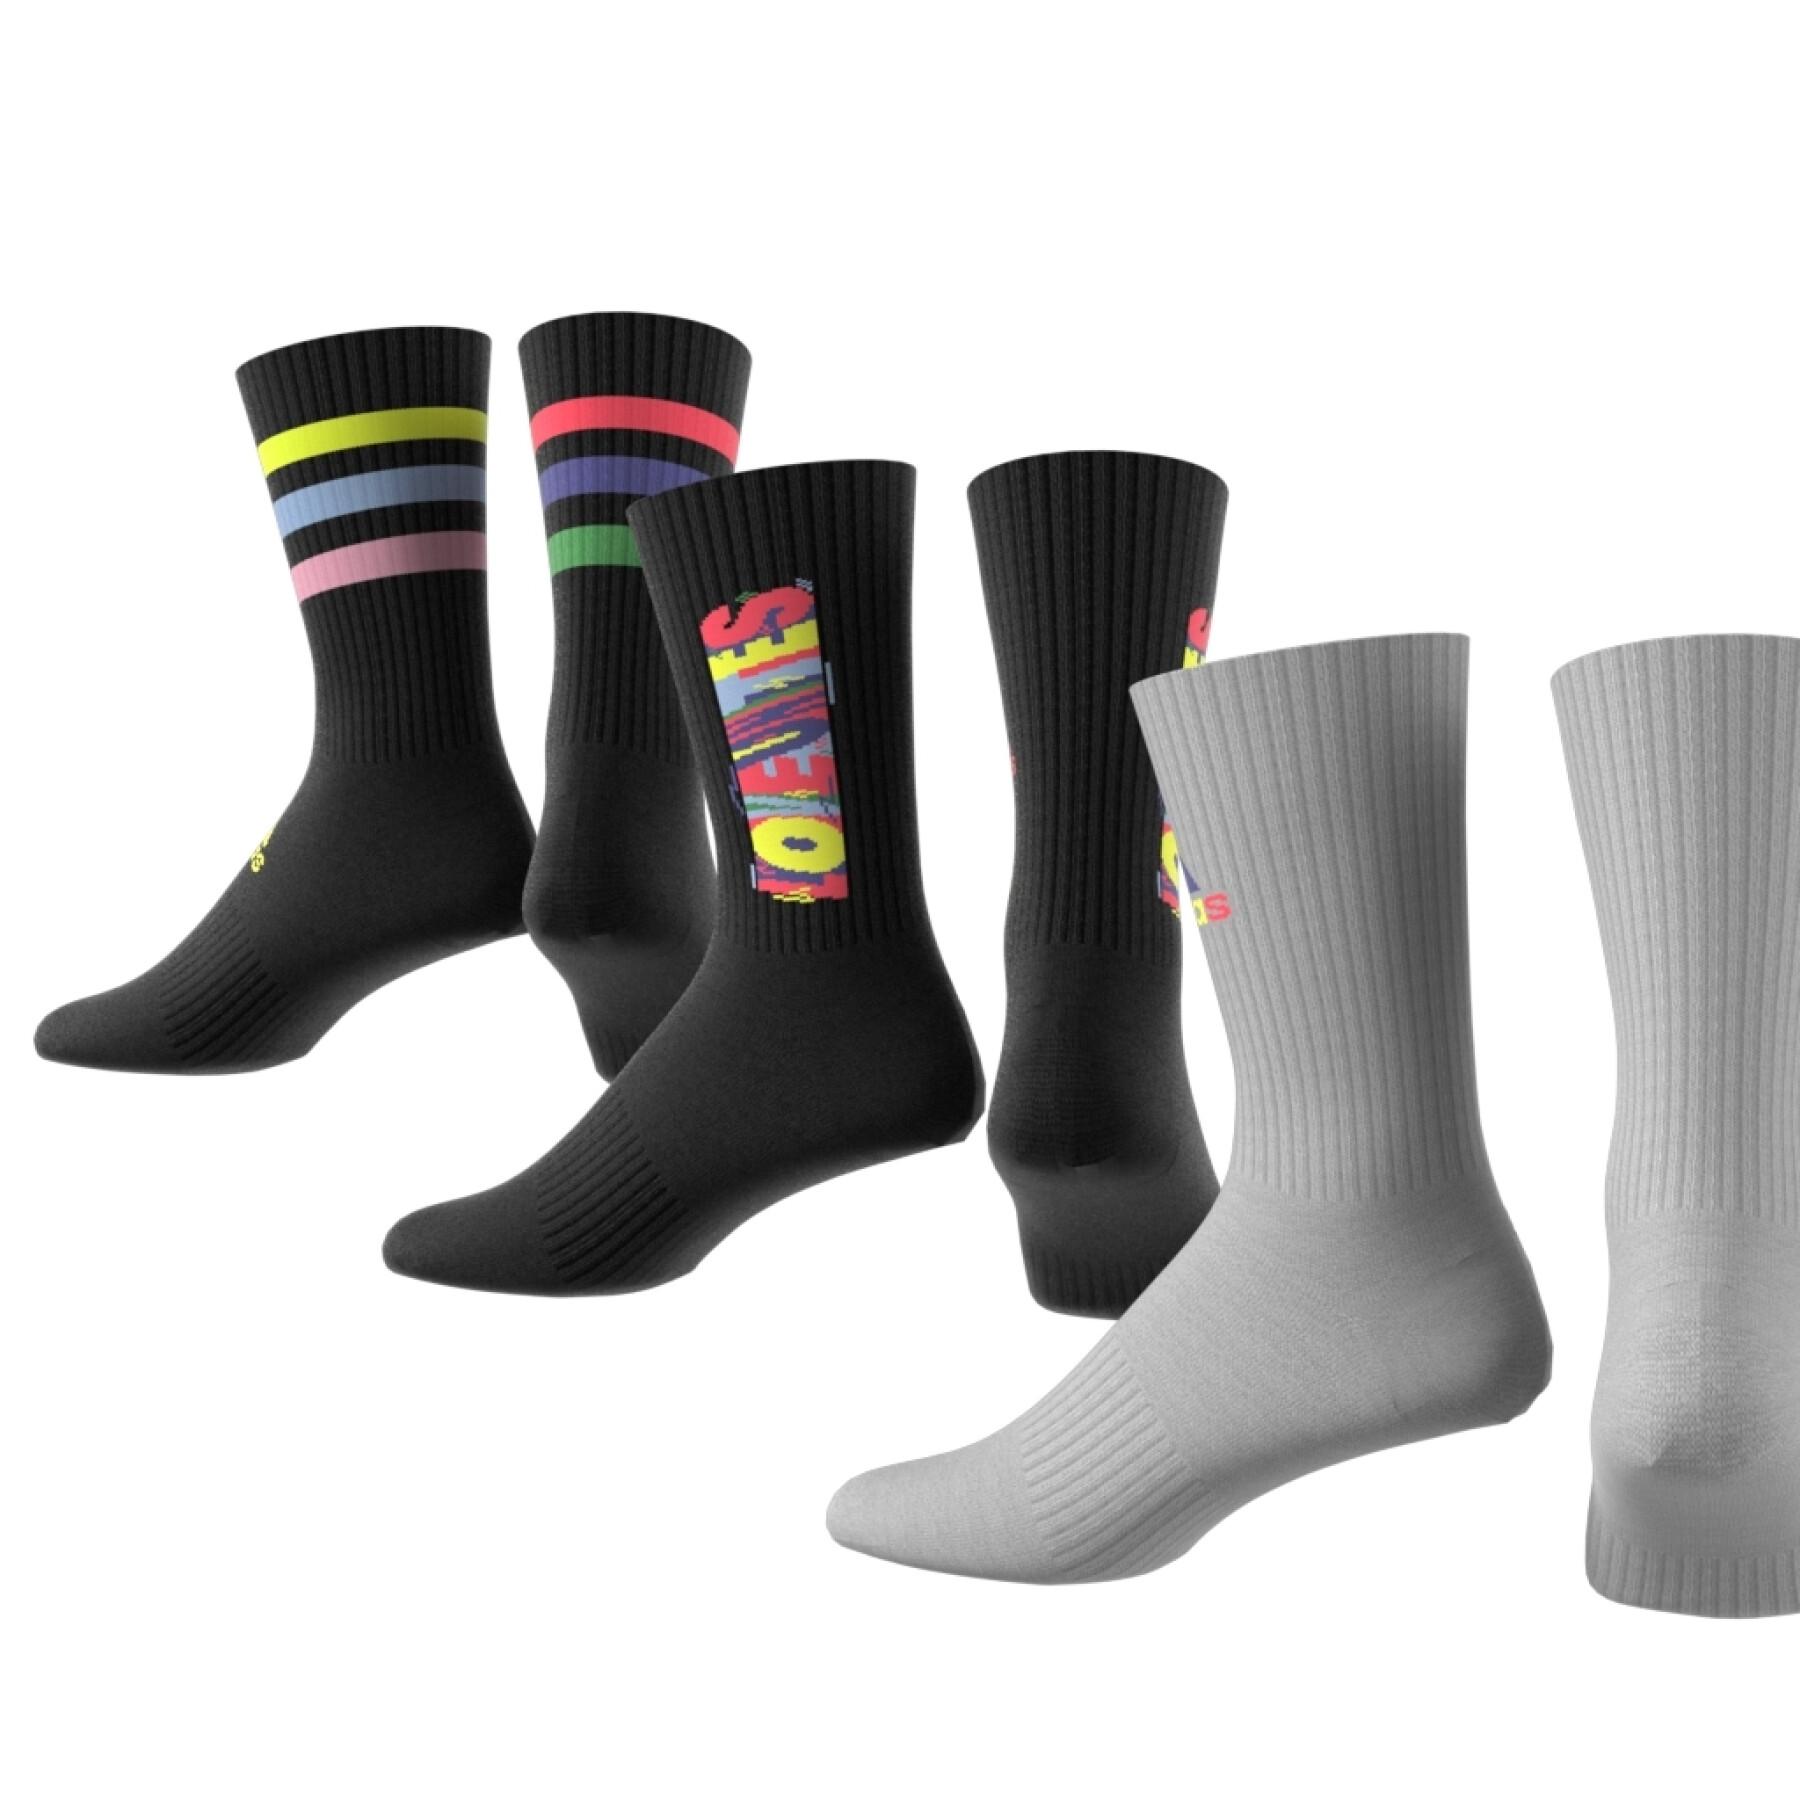 Pack of 3 pairs of mid-calf socks adidas Love Unites